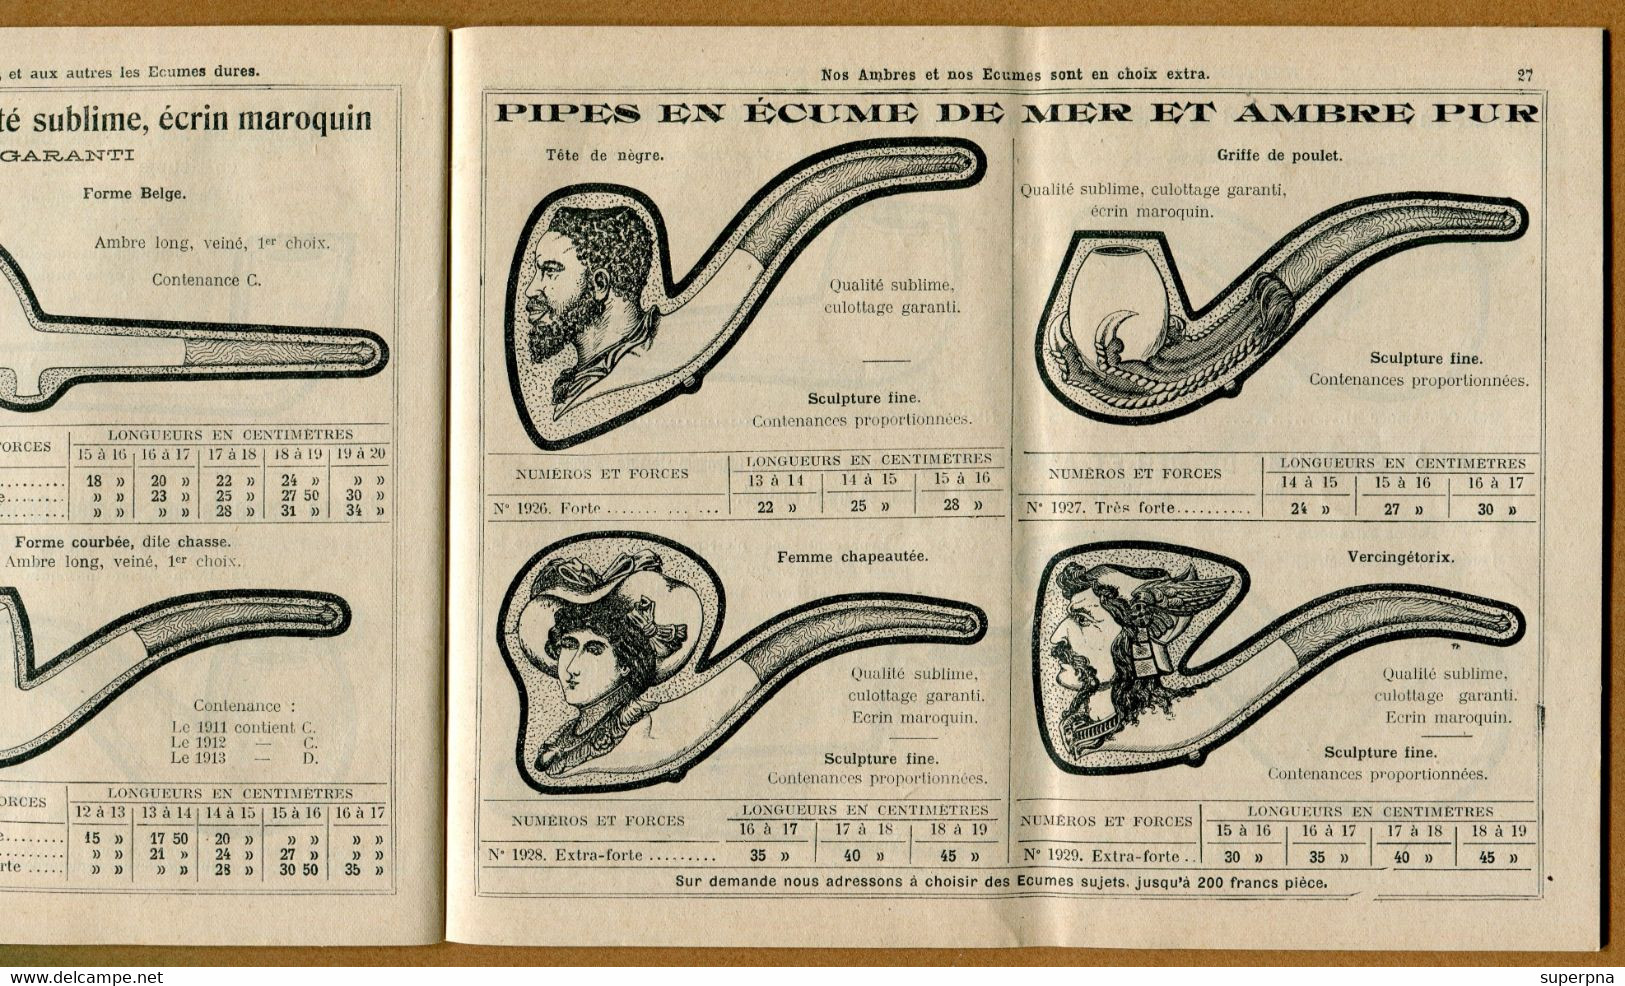 " CATALOGUE D'ARTICLES POUR FUMEURS - BESSARD " De CLERMONT-FERRAND  (1909/1910)  Pipe - Dokumente